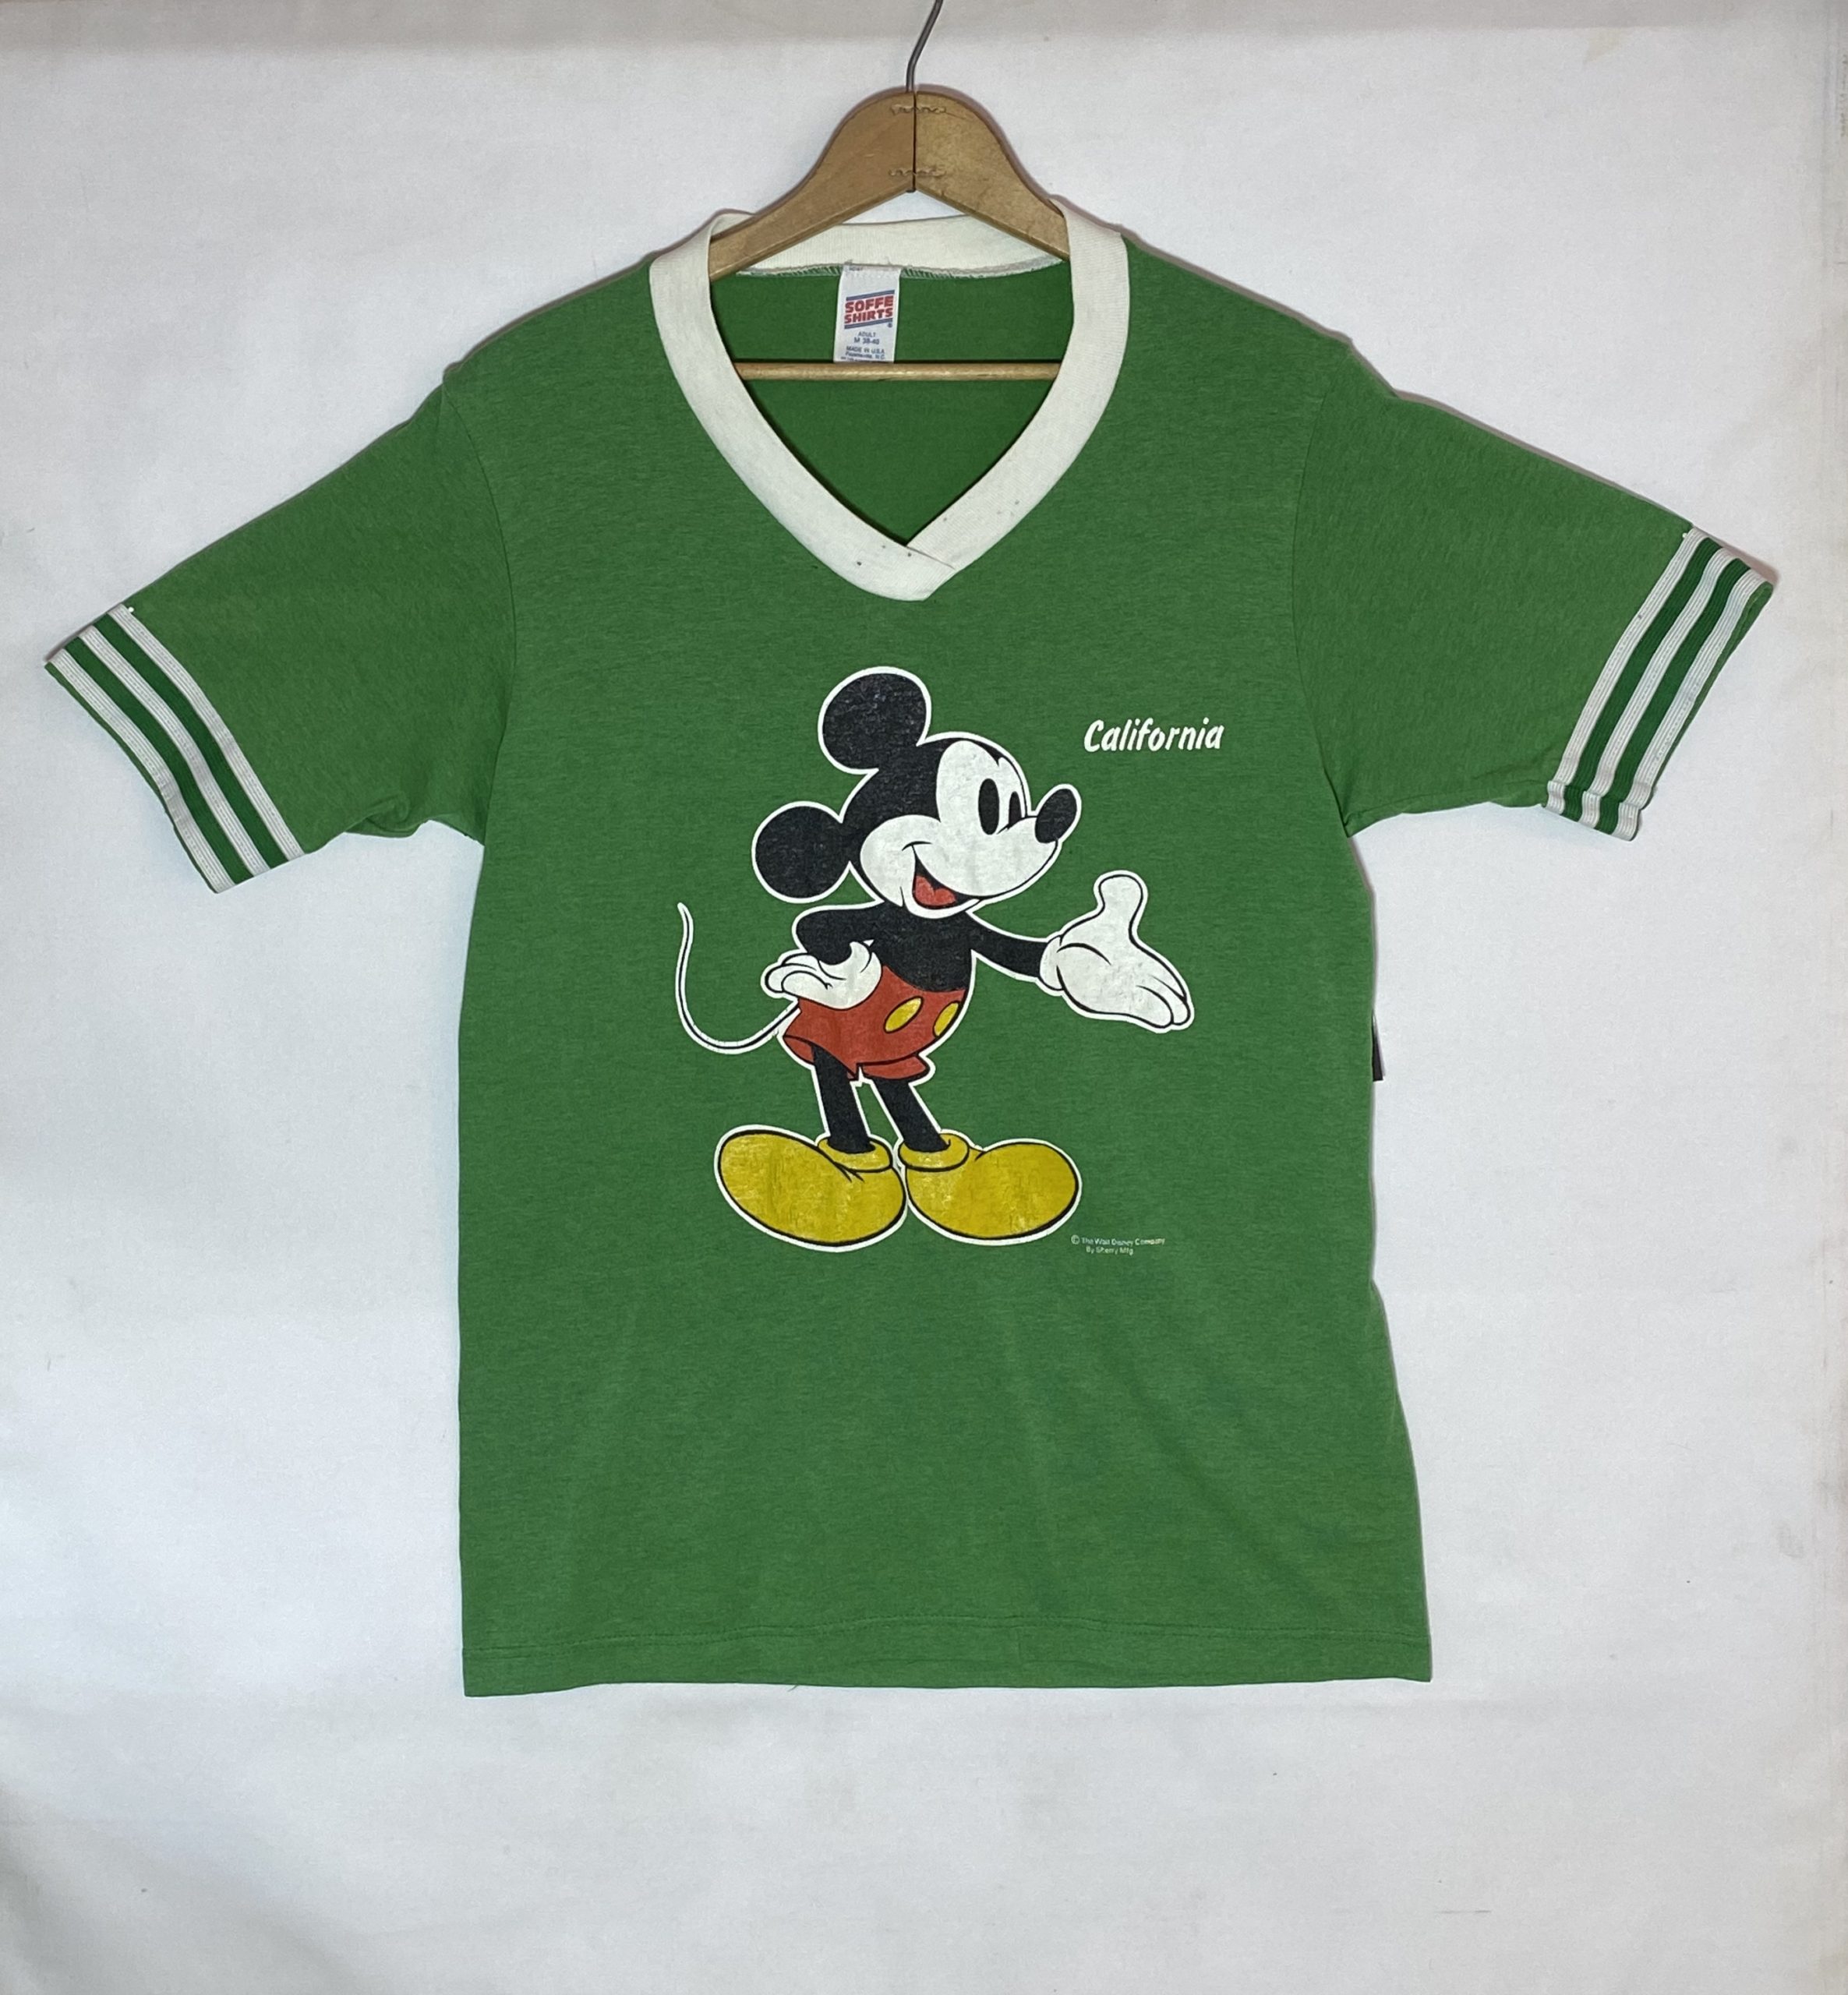 ビンテージ Tシャツ カリフォルニア Mickey Mouse(ミッキーマウス) 70’s Vネック ラインリブ プリントTee 緑 グリーン